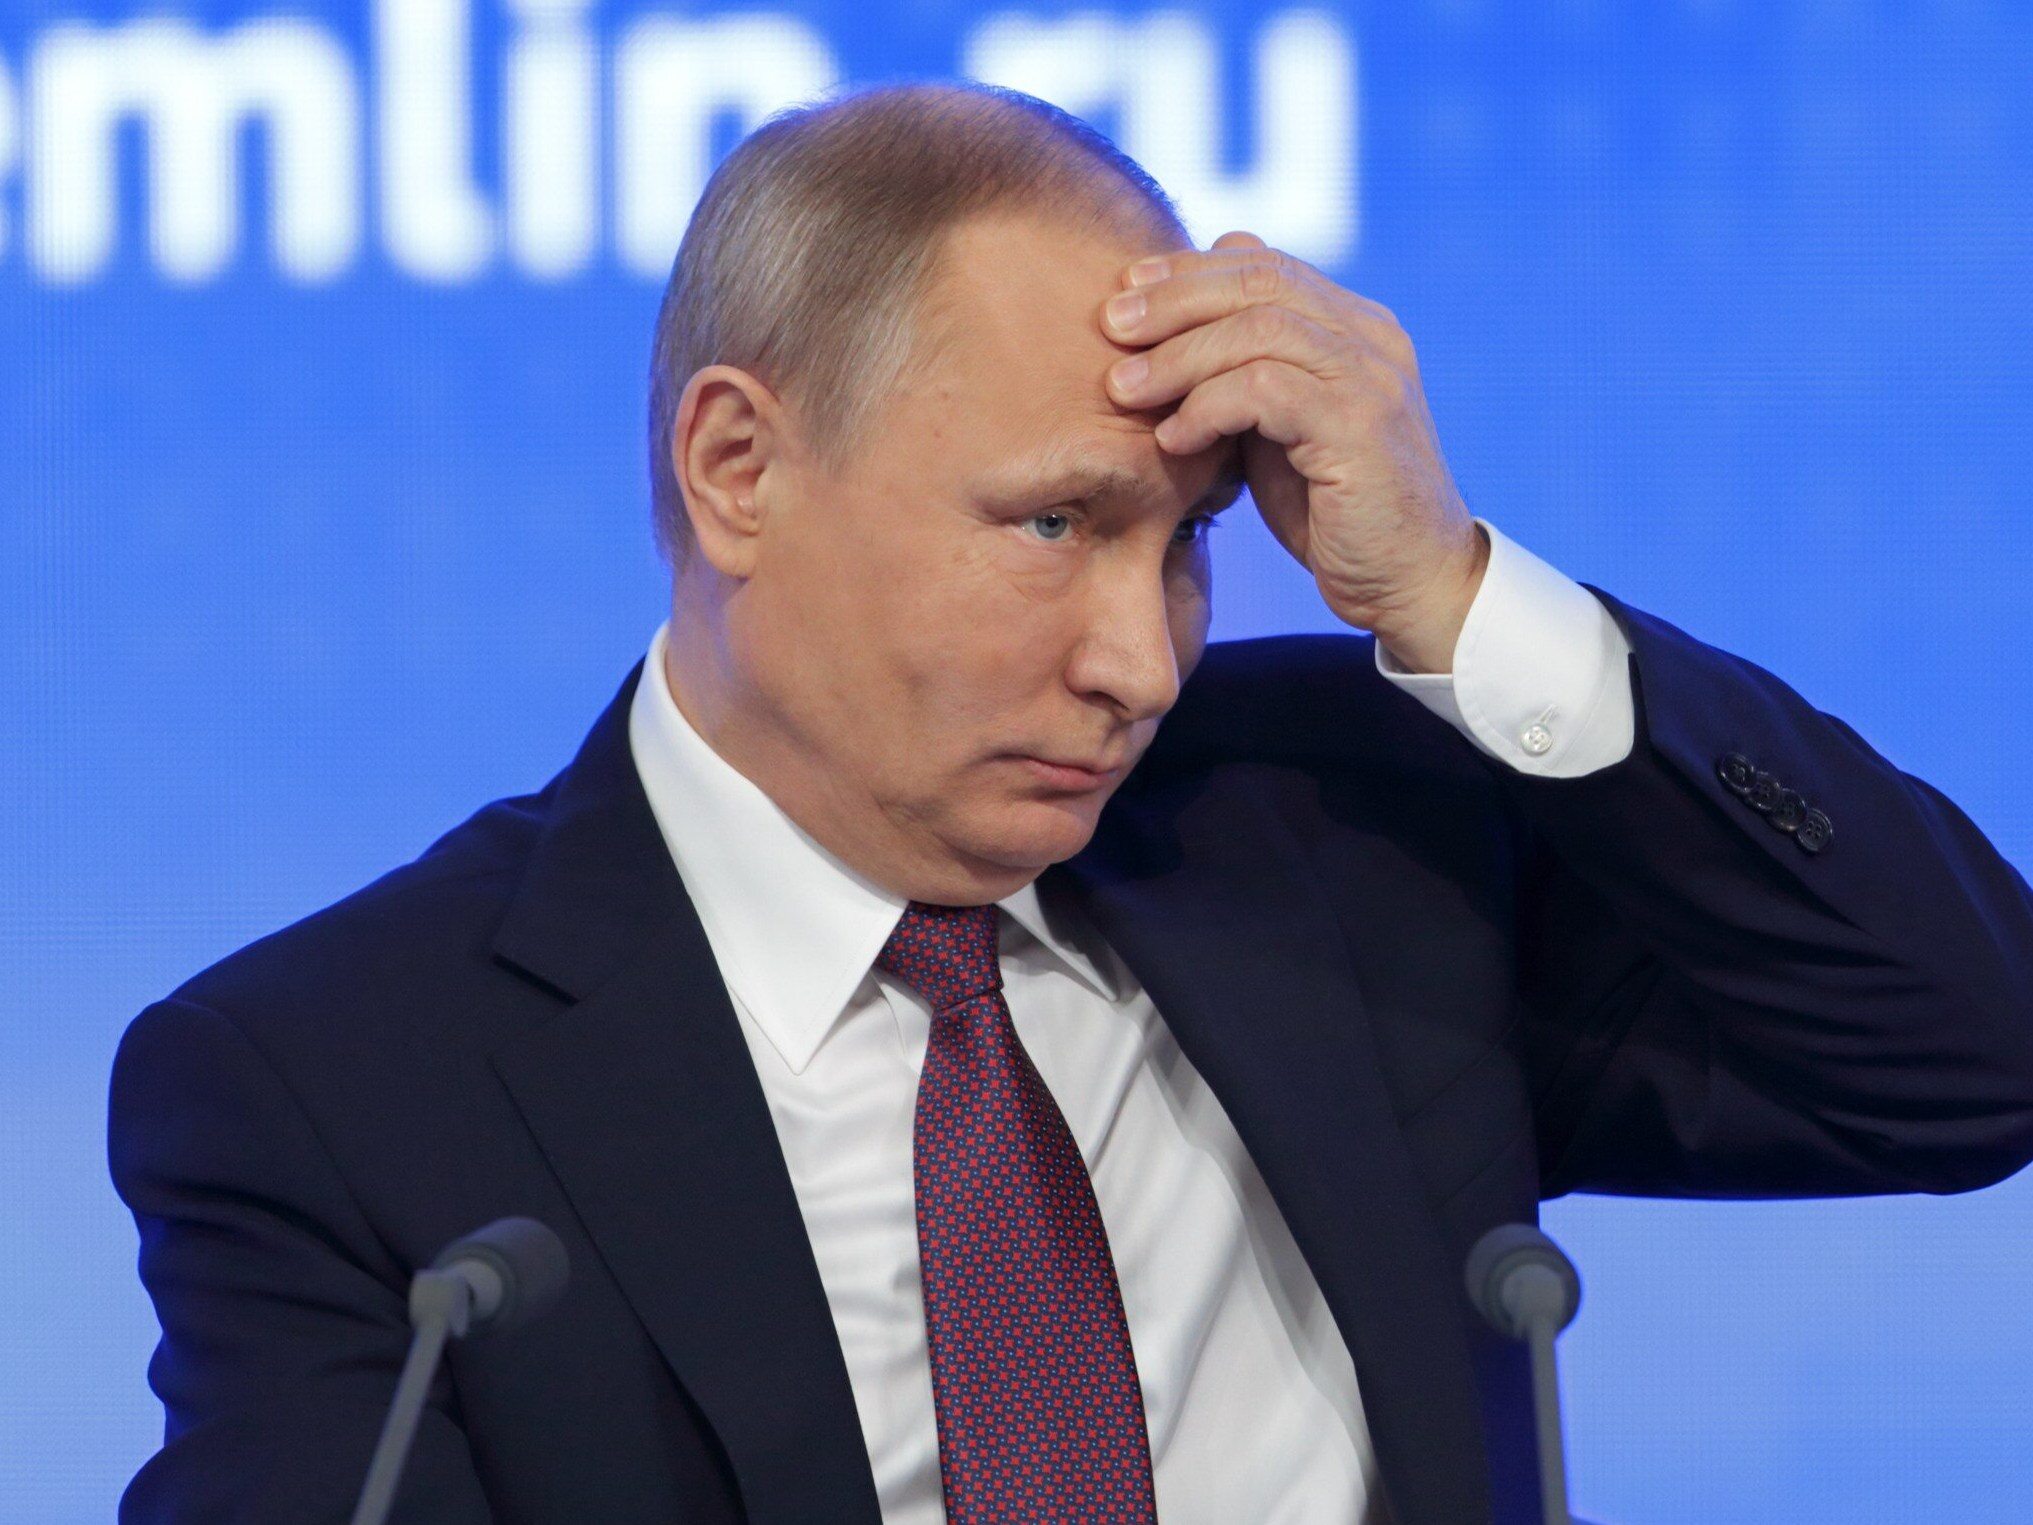 Putin ma obsesję na punkcie swojego zdrowia? Jego rozmówca musiał spełnić zaskakujący warunek